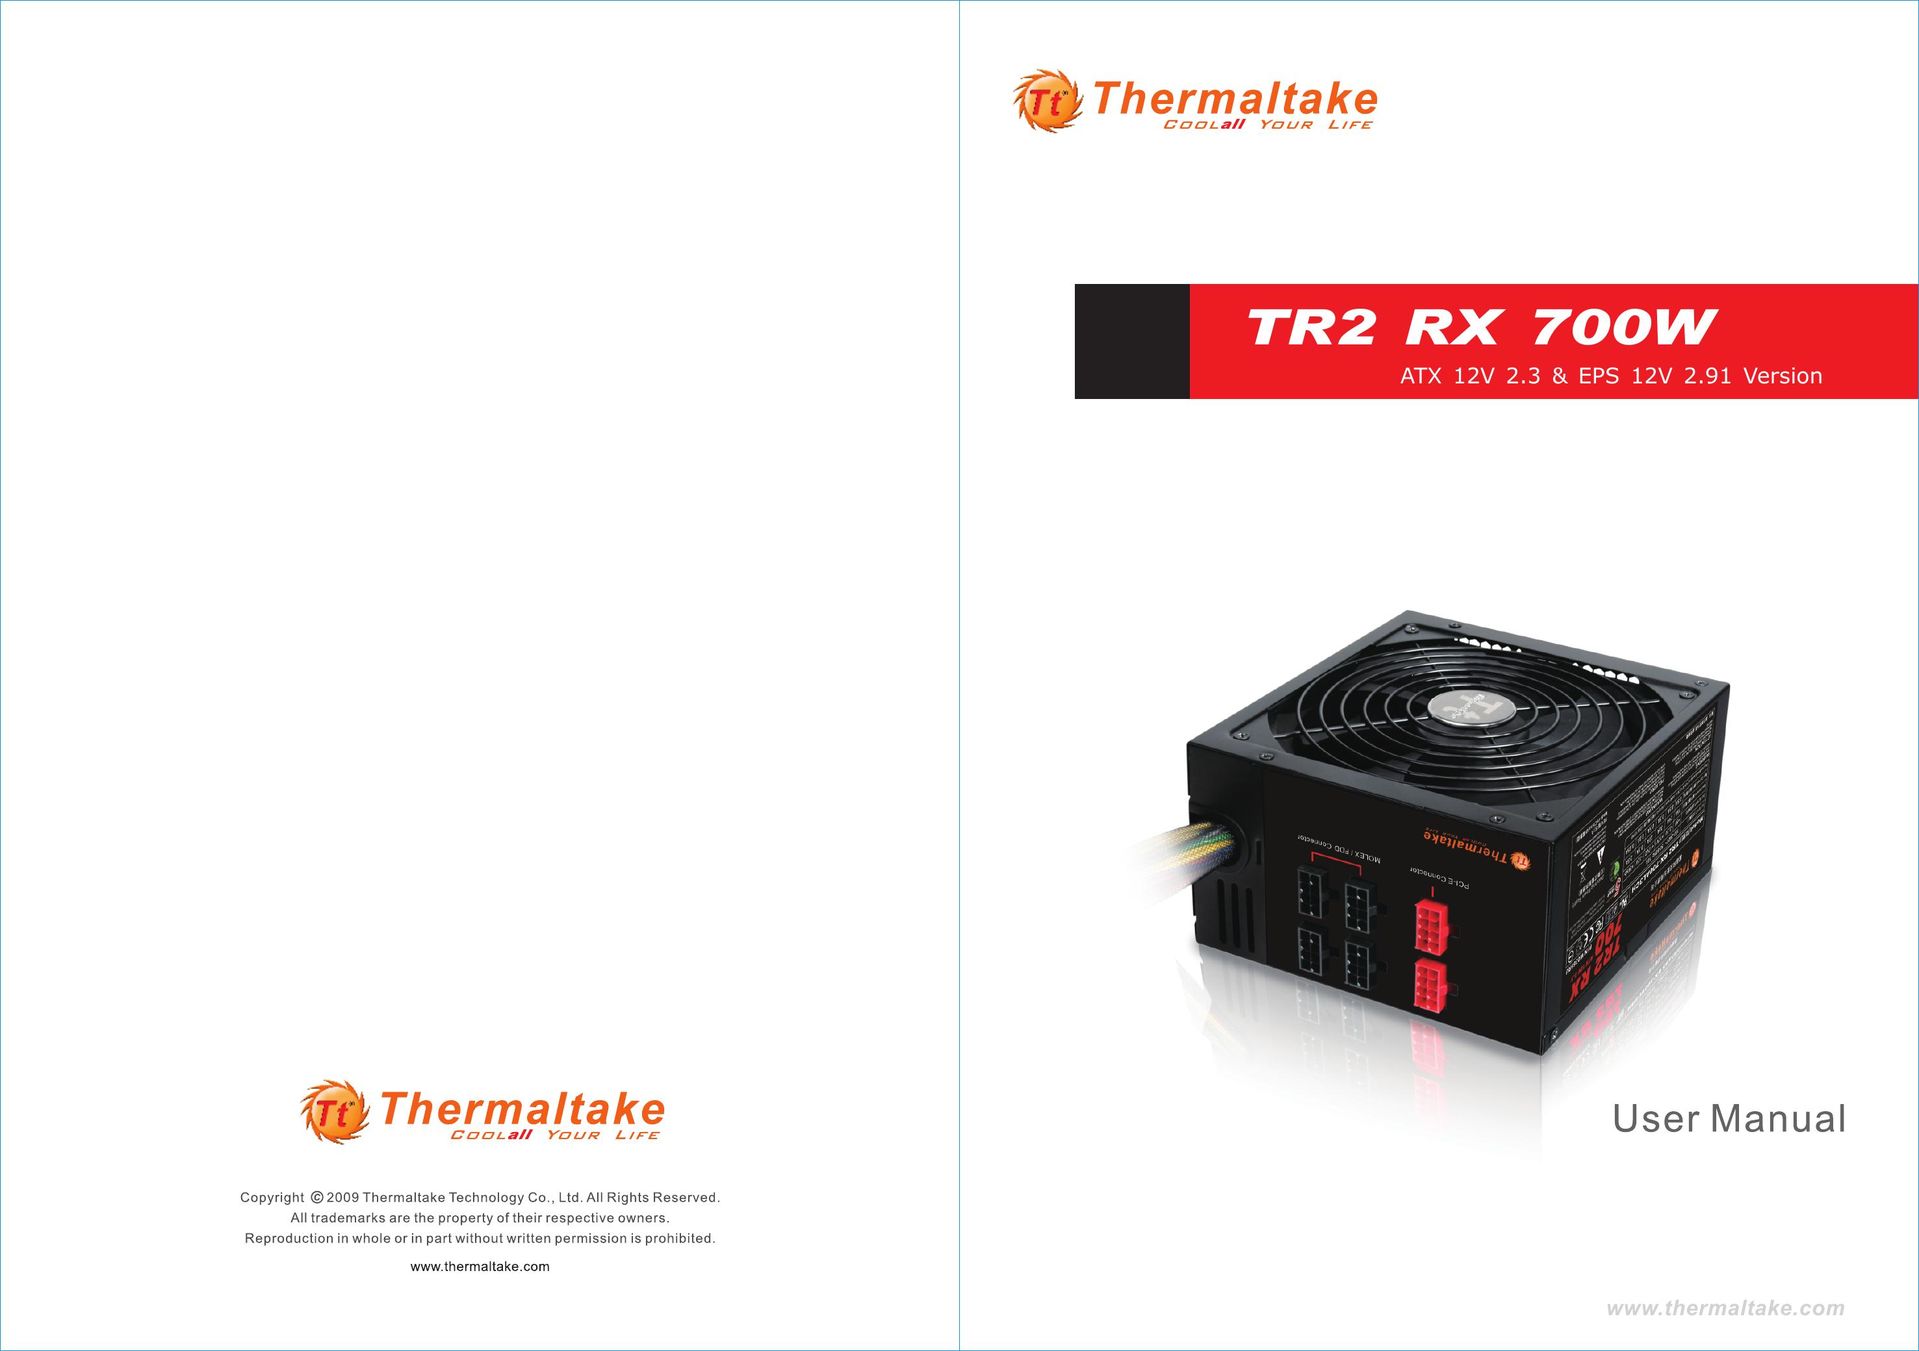 Thermaltake EPS 12V 2.91 Power Supply User Manual